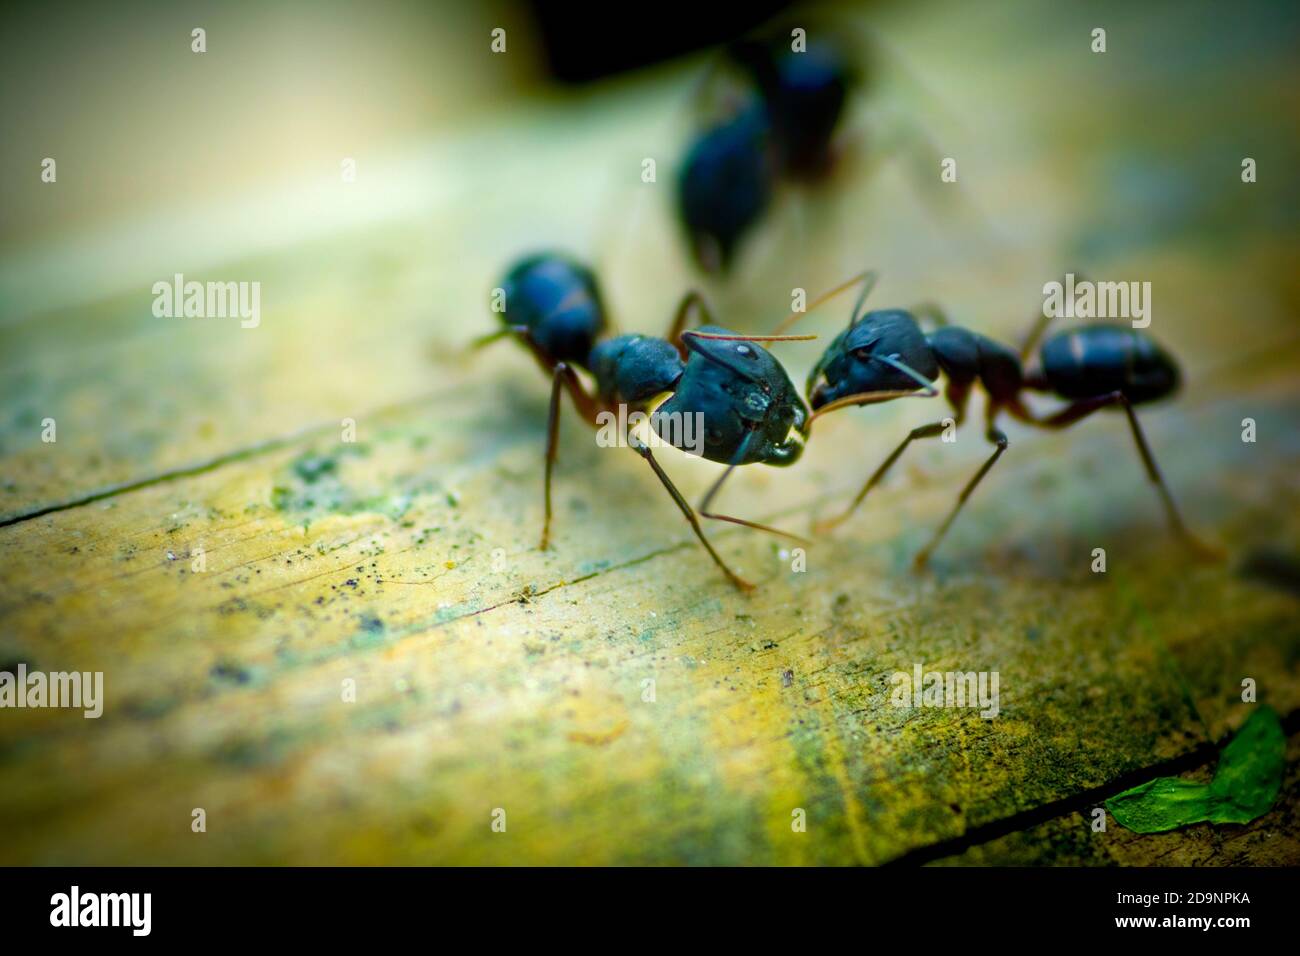 Le formiche stanno ingigando la lotta. Fotografia di fauna selvatica Bangladesh. Foto Stock